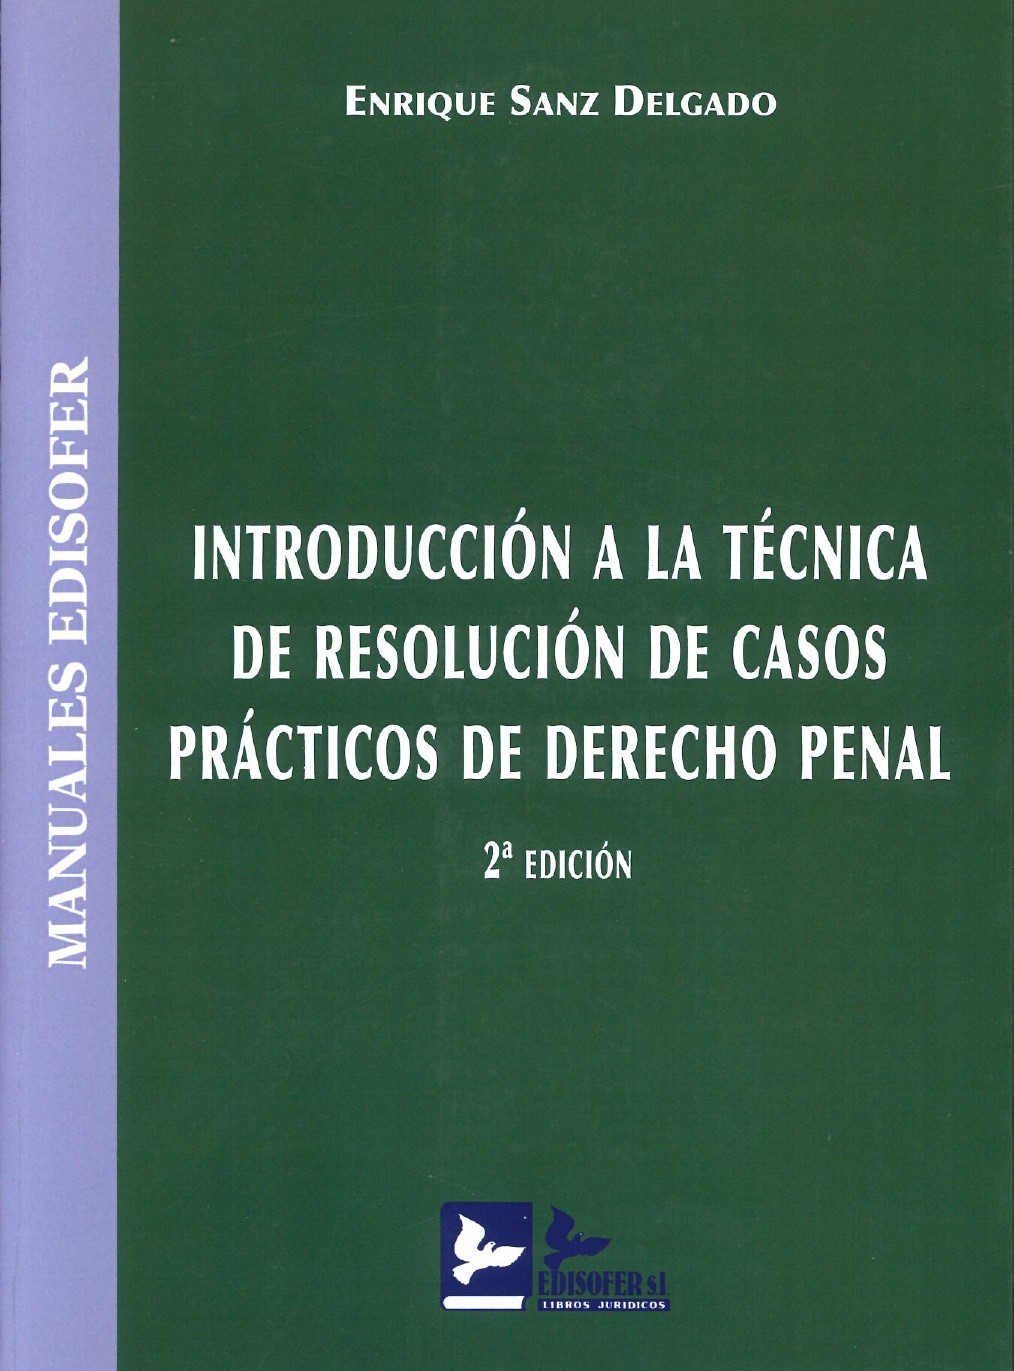 Imagen de portada del libro Introducción a la técnica de resolución de casos prácticos de derecho penal